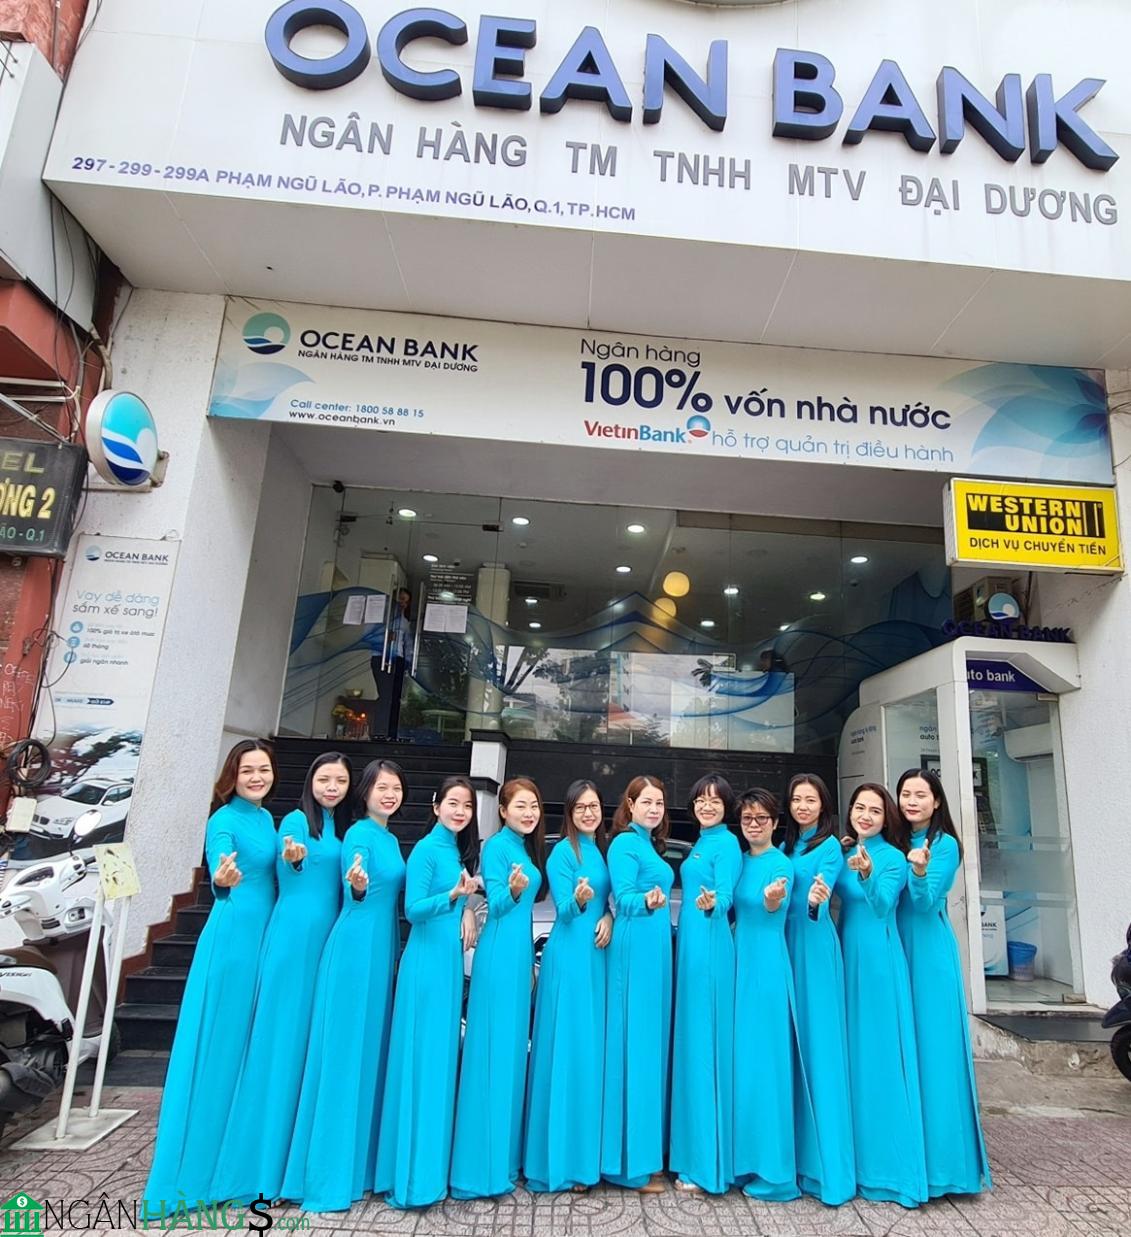 Ảnh Cây ATM ngân hàng Đại Dương Oceanbank CN Bình Dương 1